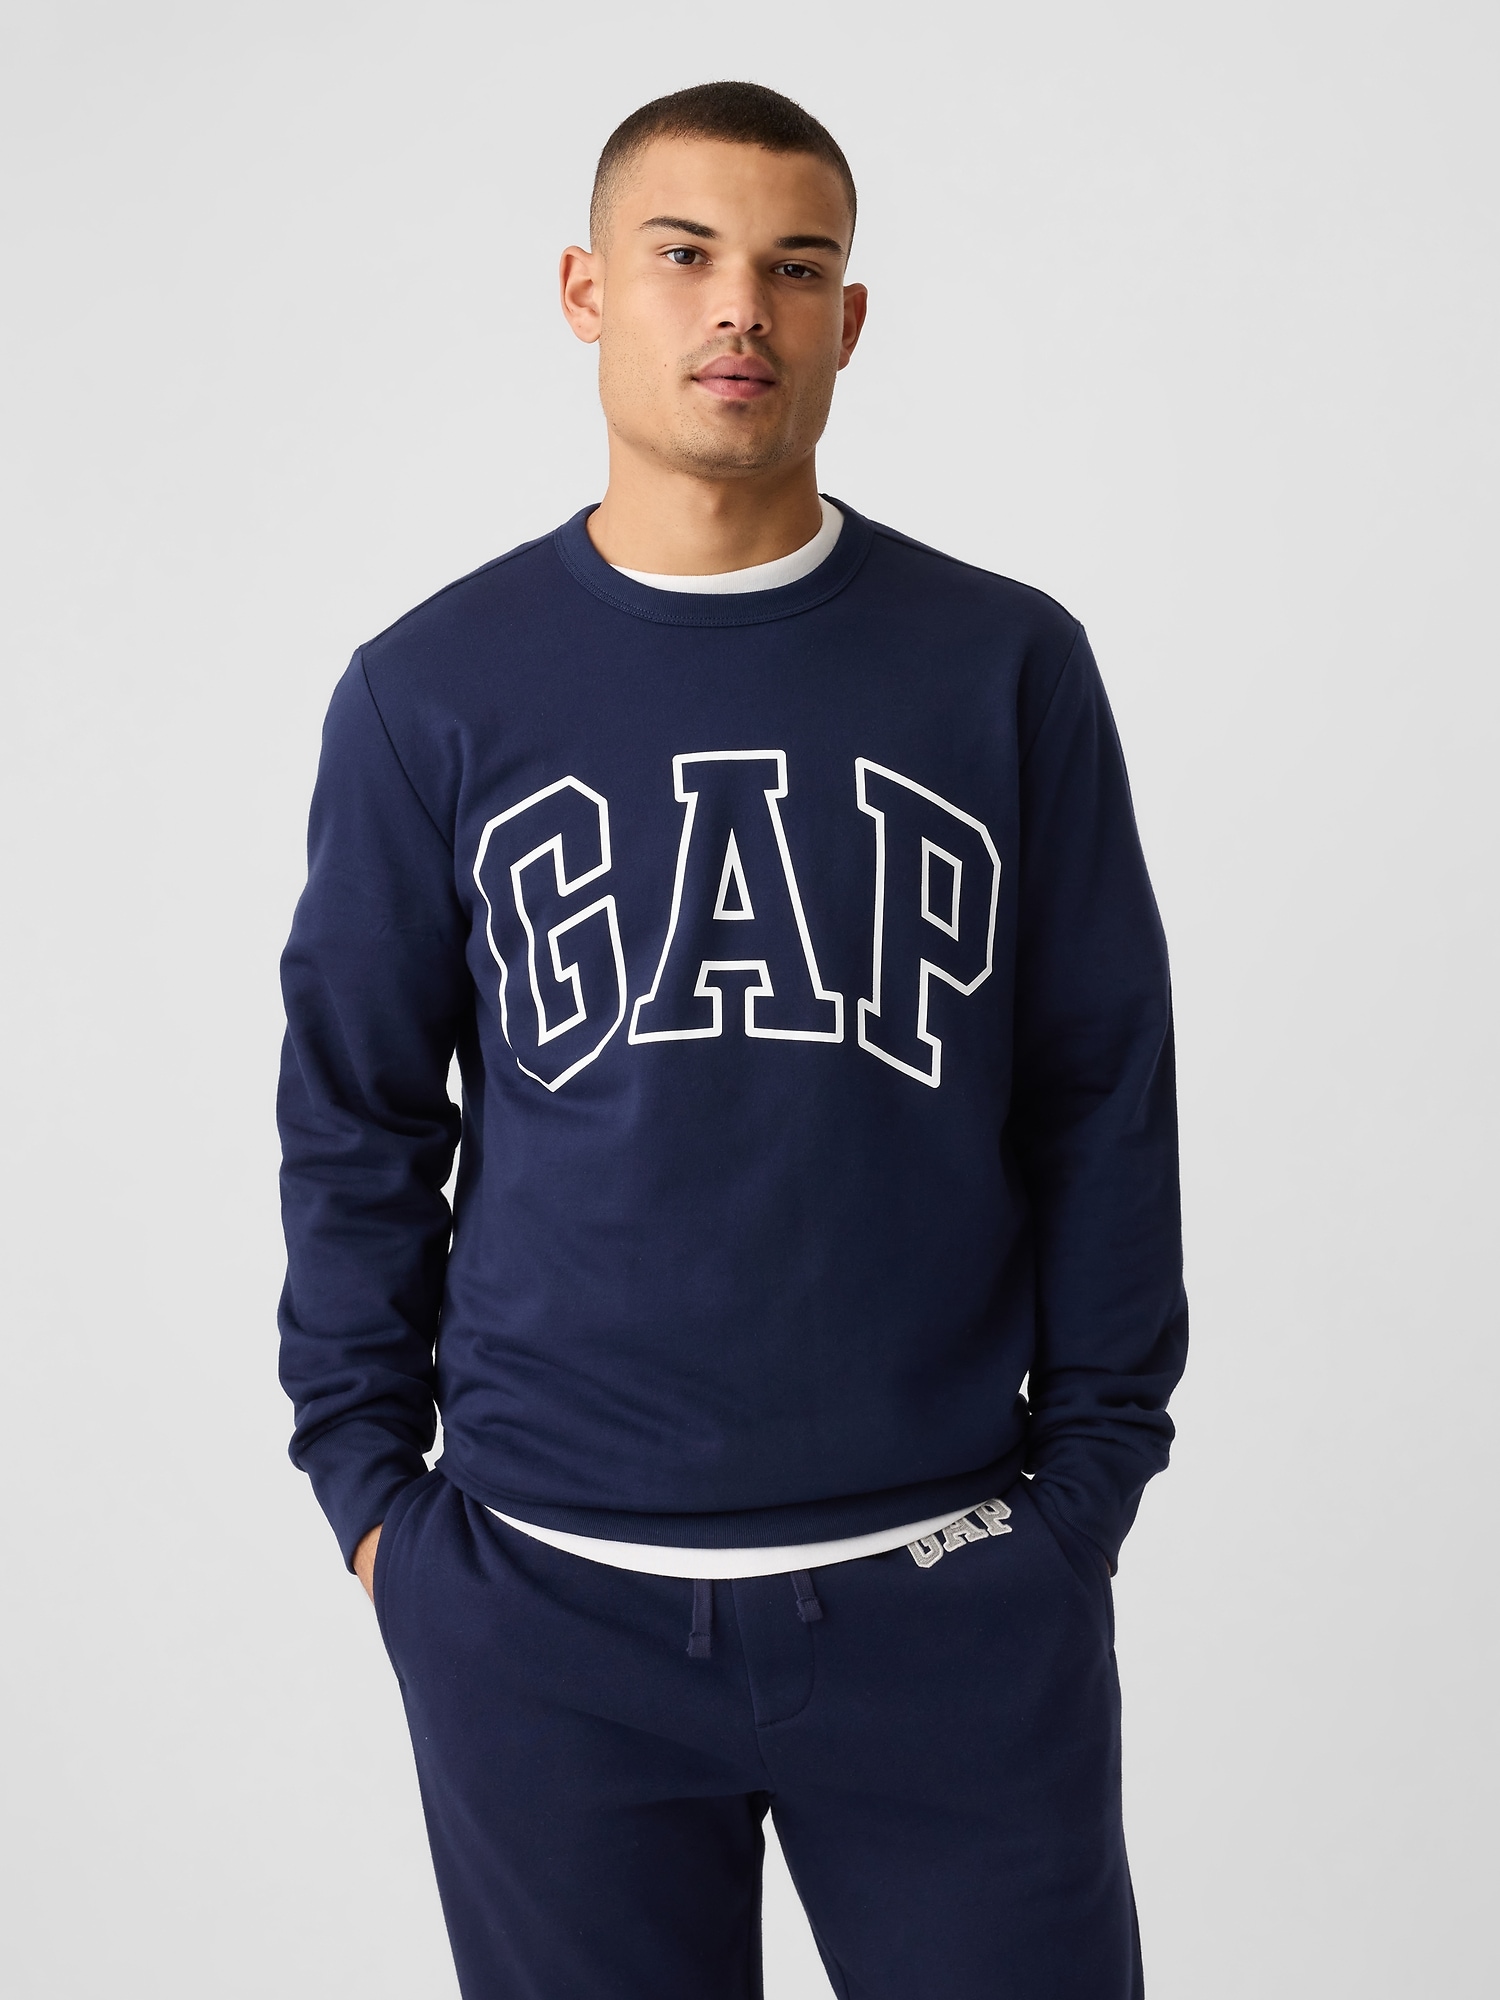 갭 Gap Logo Sweatshirt